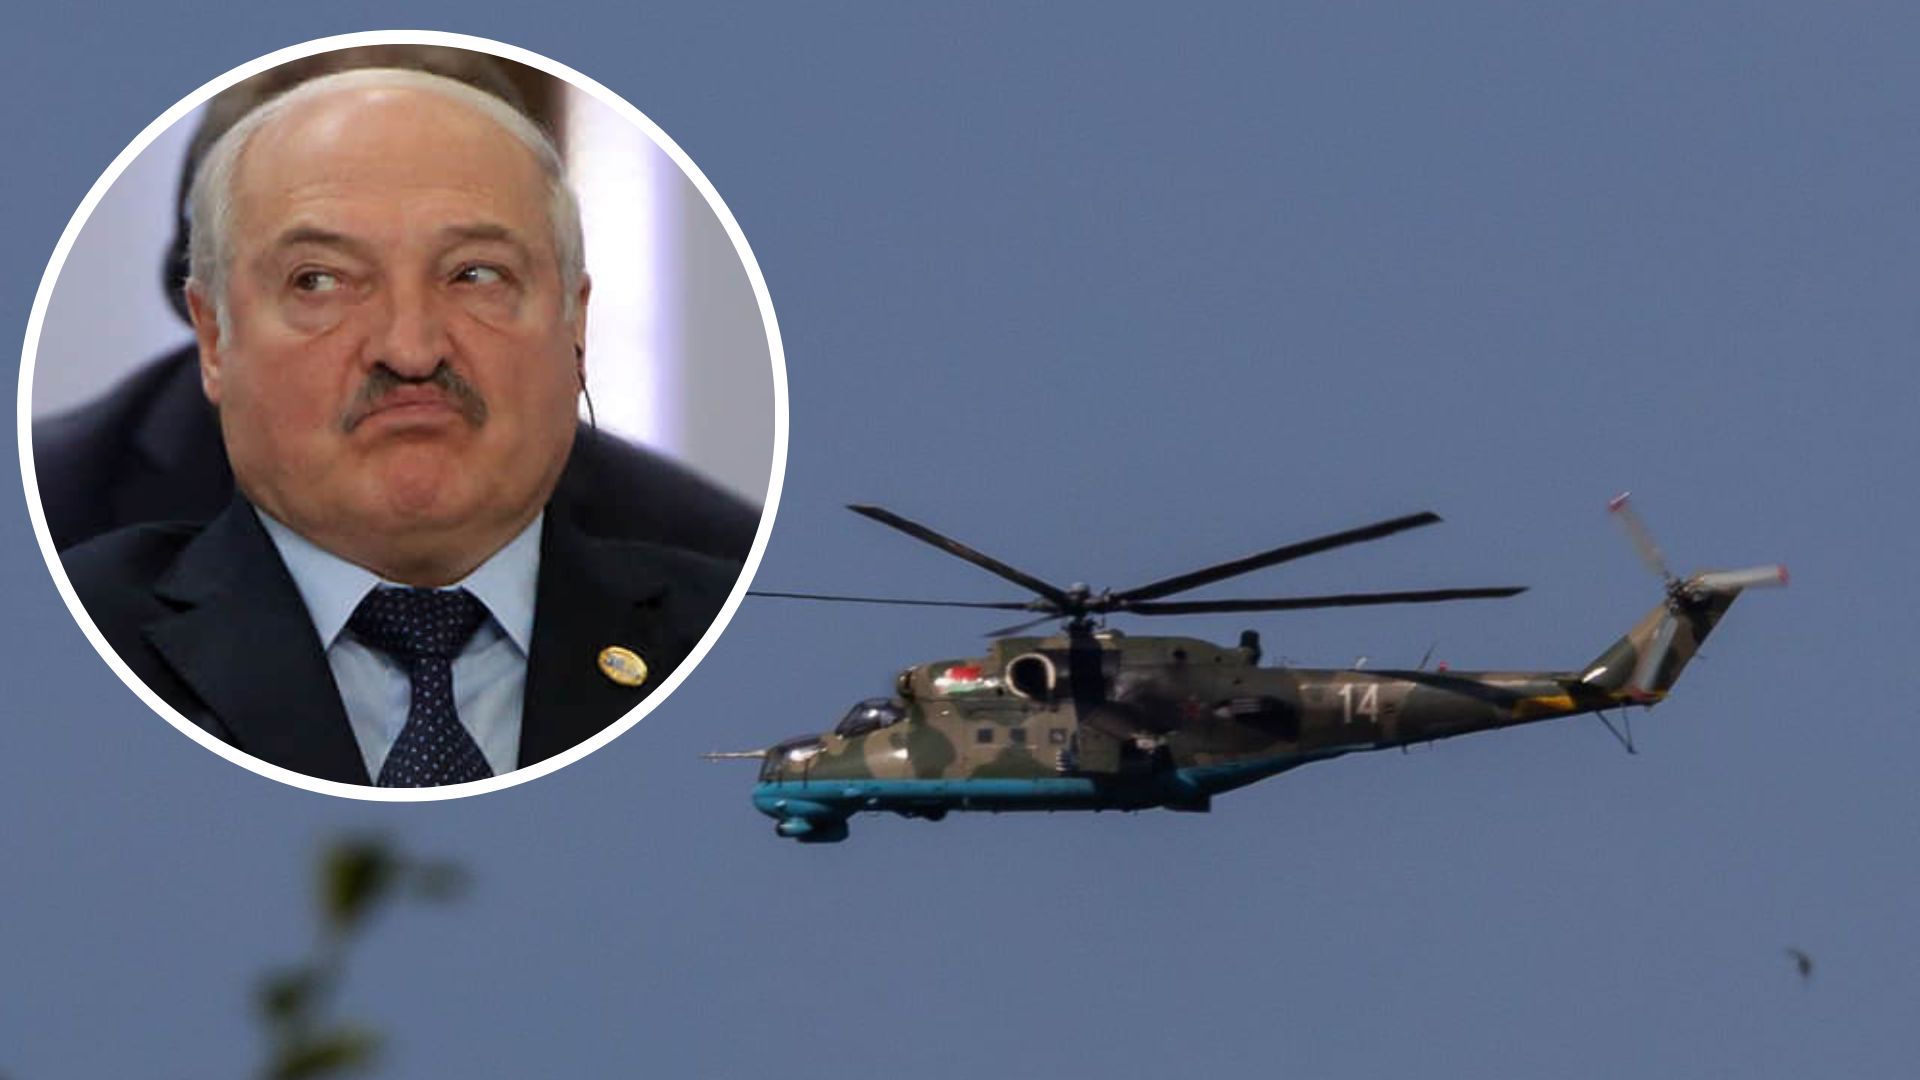 Білоруські гелікоптери, які перетнули кордон Польщі, могли охороняти Лукашенка